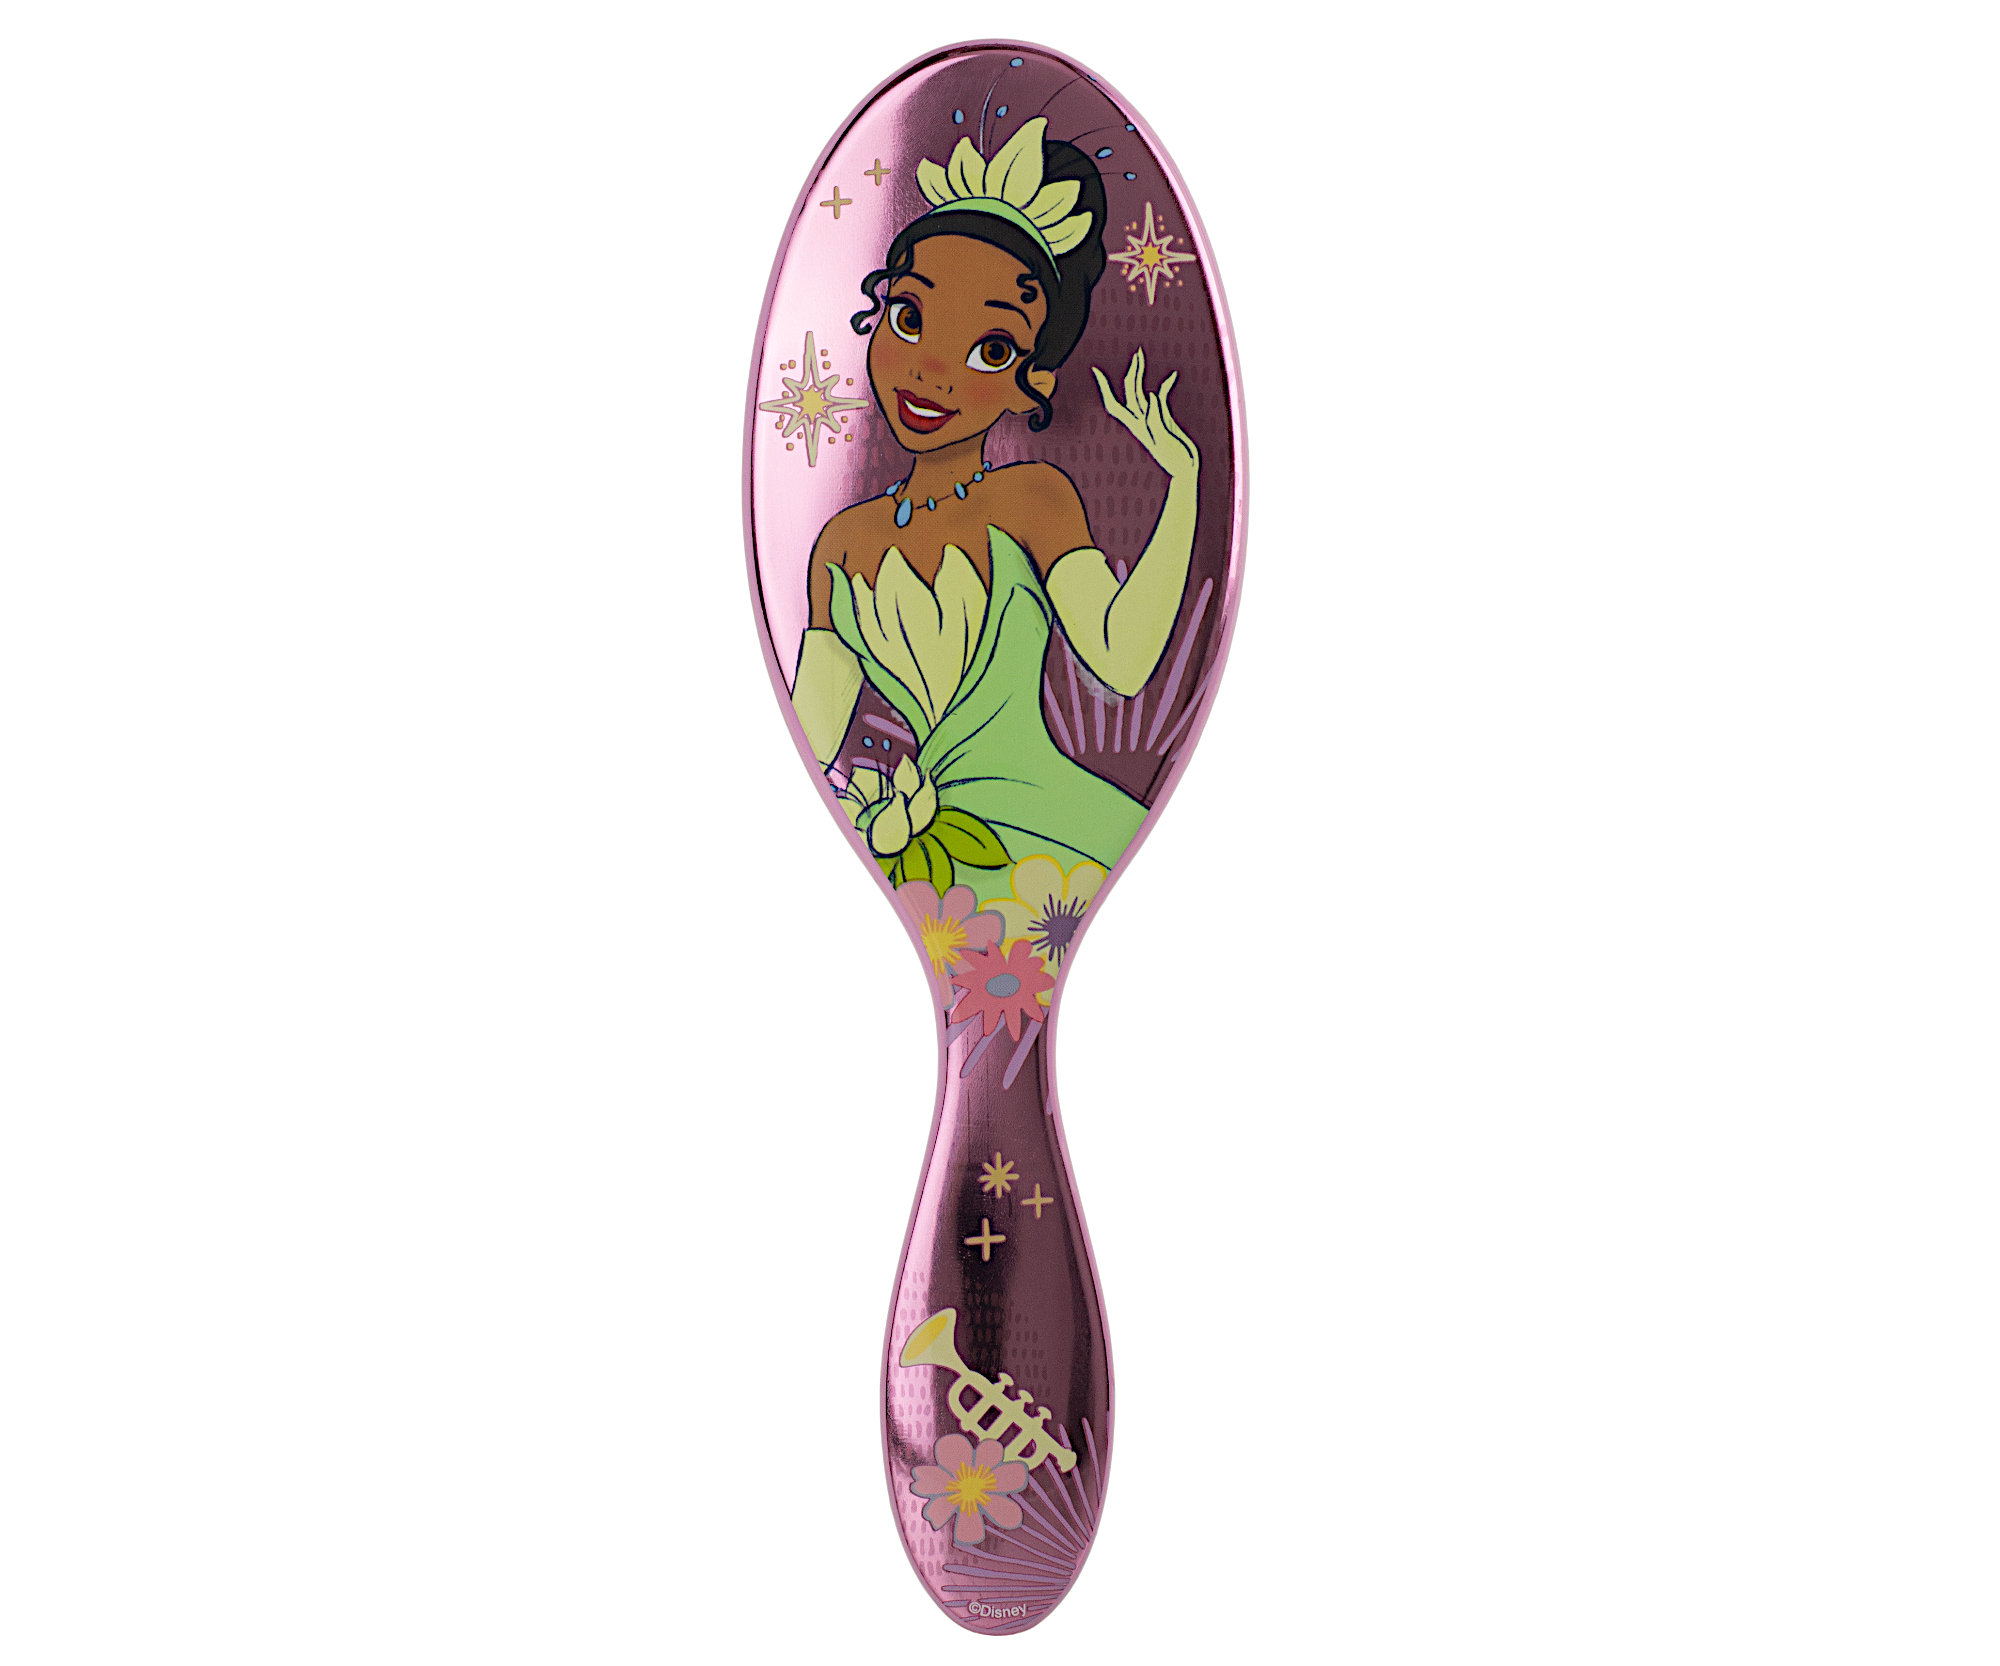 Kartáč na rozčesávání vlasů Wet Brush Original Detangler Disney Princess Tiana - světle růžový (0217285) + dárek zdarma